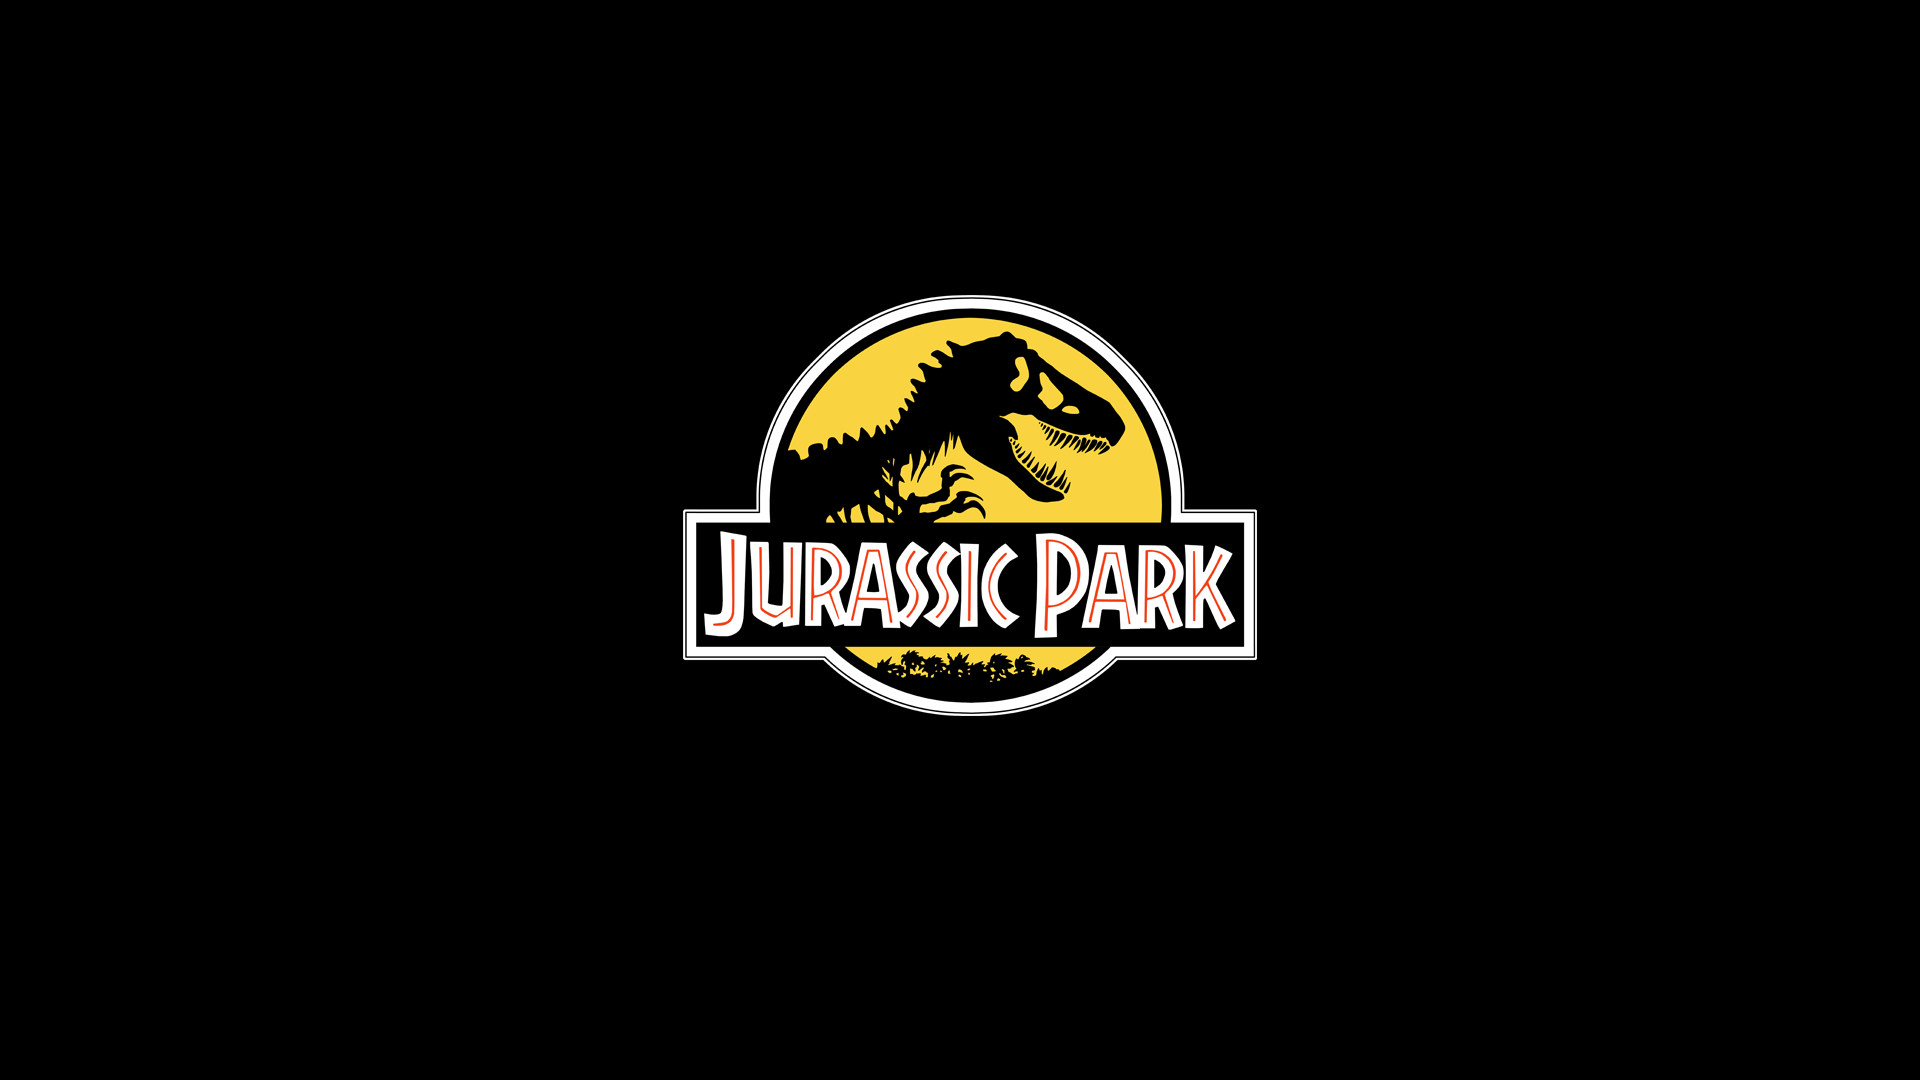 1920x1080 Jurassic Park Id Badge Template